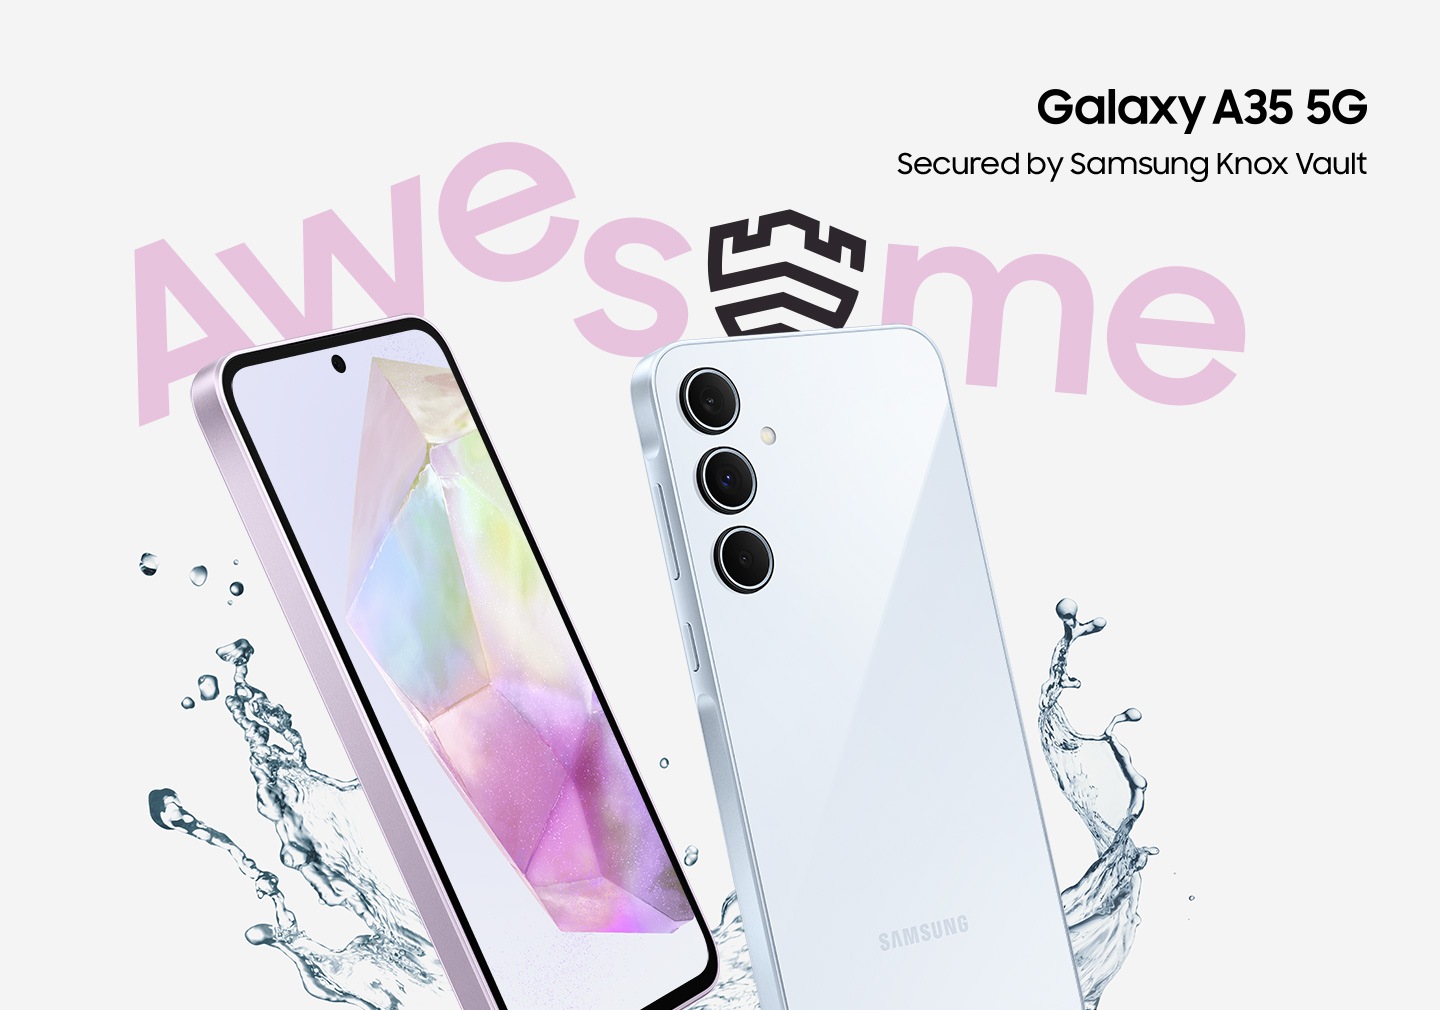 ภาพของสมาร์ทโฟนสองเครื่องที่เอียงทำมุมอยู่พร้อมกับมีน้ำกระเซ็นอยู่โดยรอบและมีคำว่า 'AWESOME' อยู่ด้วย หน้าจอของโทรศัพท์แสดงวอลเปเปอร์แบบไล่ระดับสีอยู่ และด้านหลังก็มีกล้องสามตัว โลโก้ Galaxy A35 5G มีข้อความเขียนไว้ว่า Secured by Samsung Knox Vault